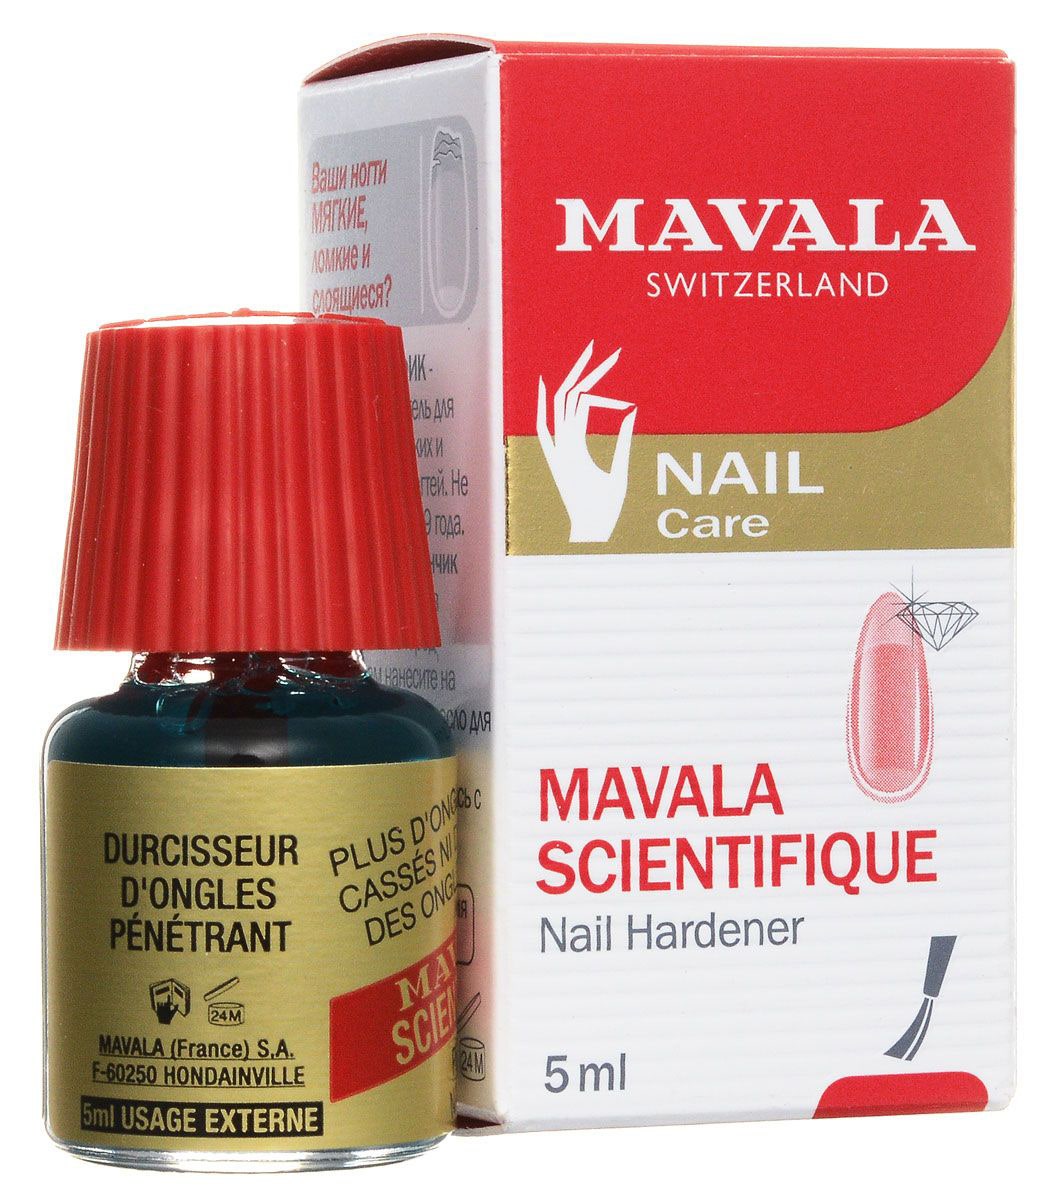 Mavala средство для ногтей Scientifique укрепляющее с проникающим эффектом